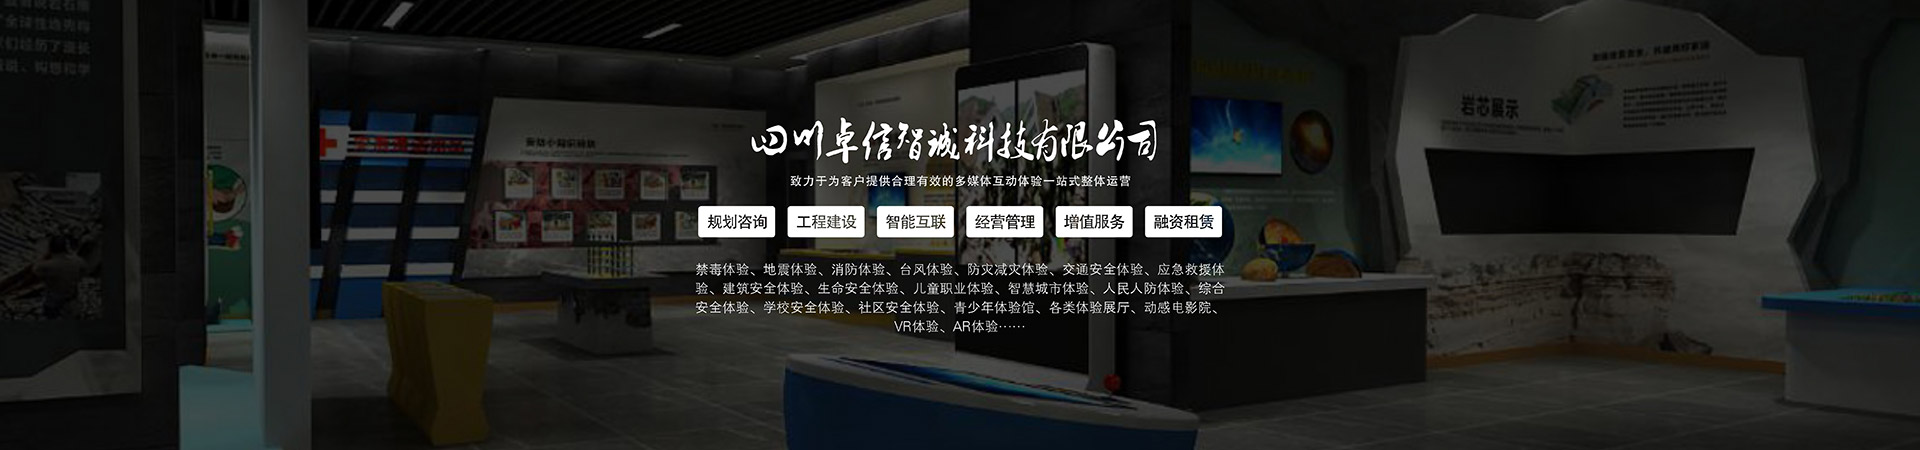 公共安全VR虚拟现实地震小屋模拟仿真数字展厅